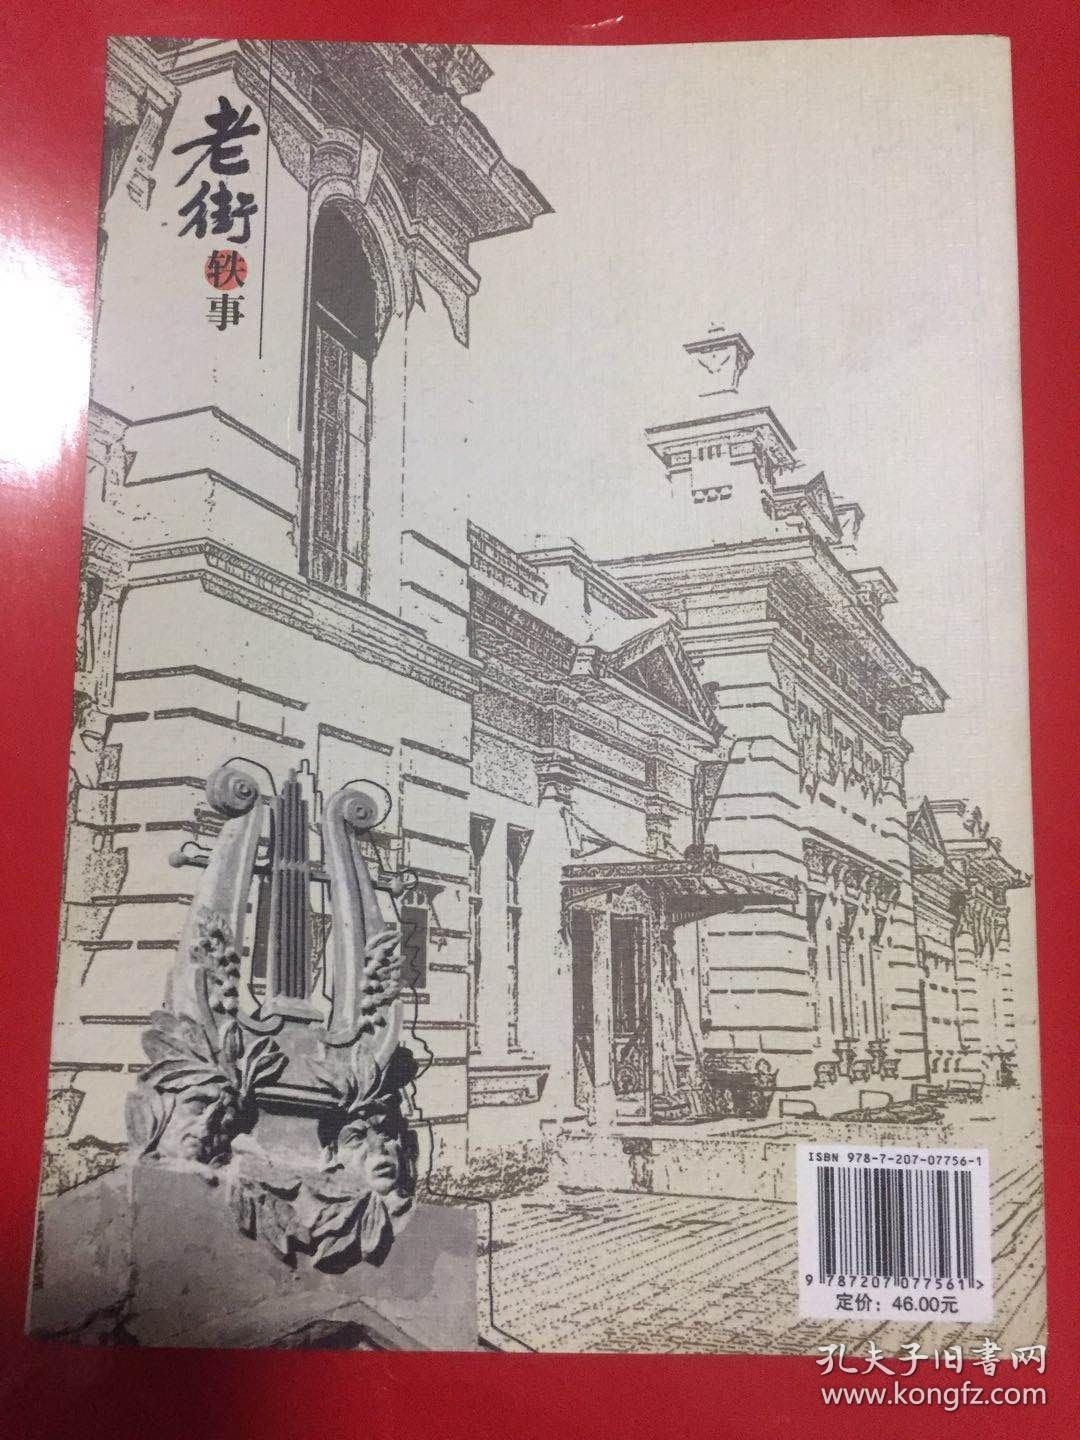 老街轶事—哈尔滨建筑背后的故事